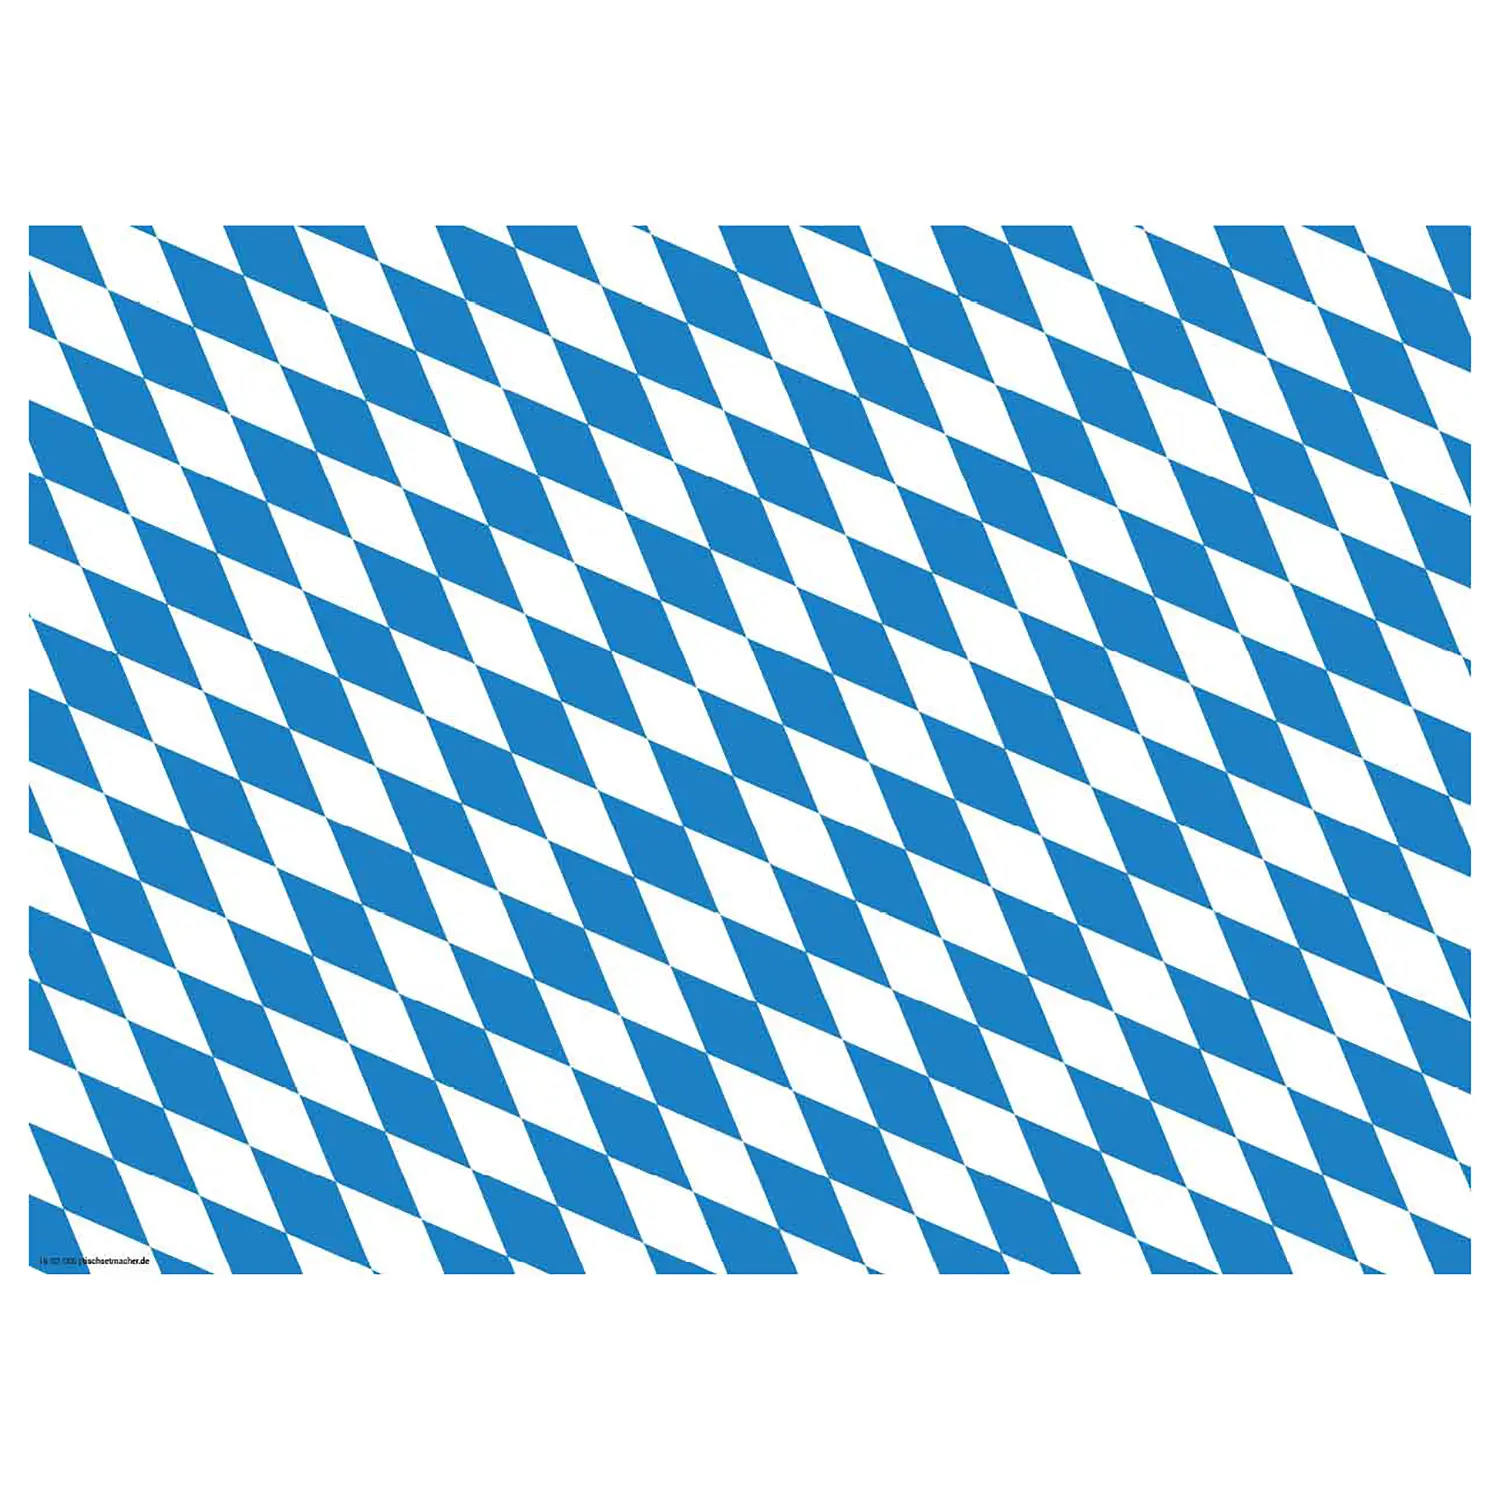 Tischset Bayrische Flagge (12er-Set)